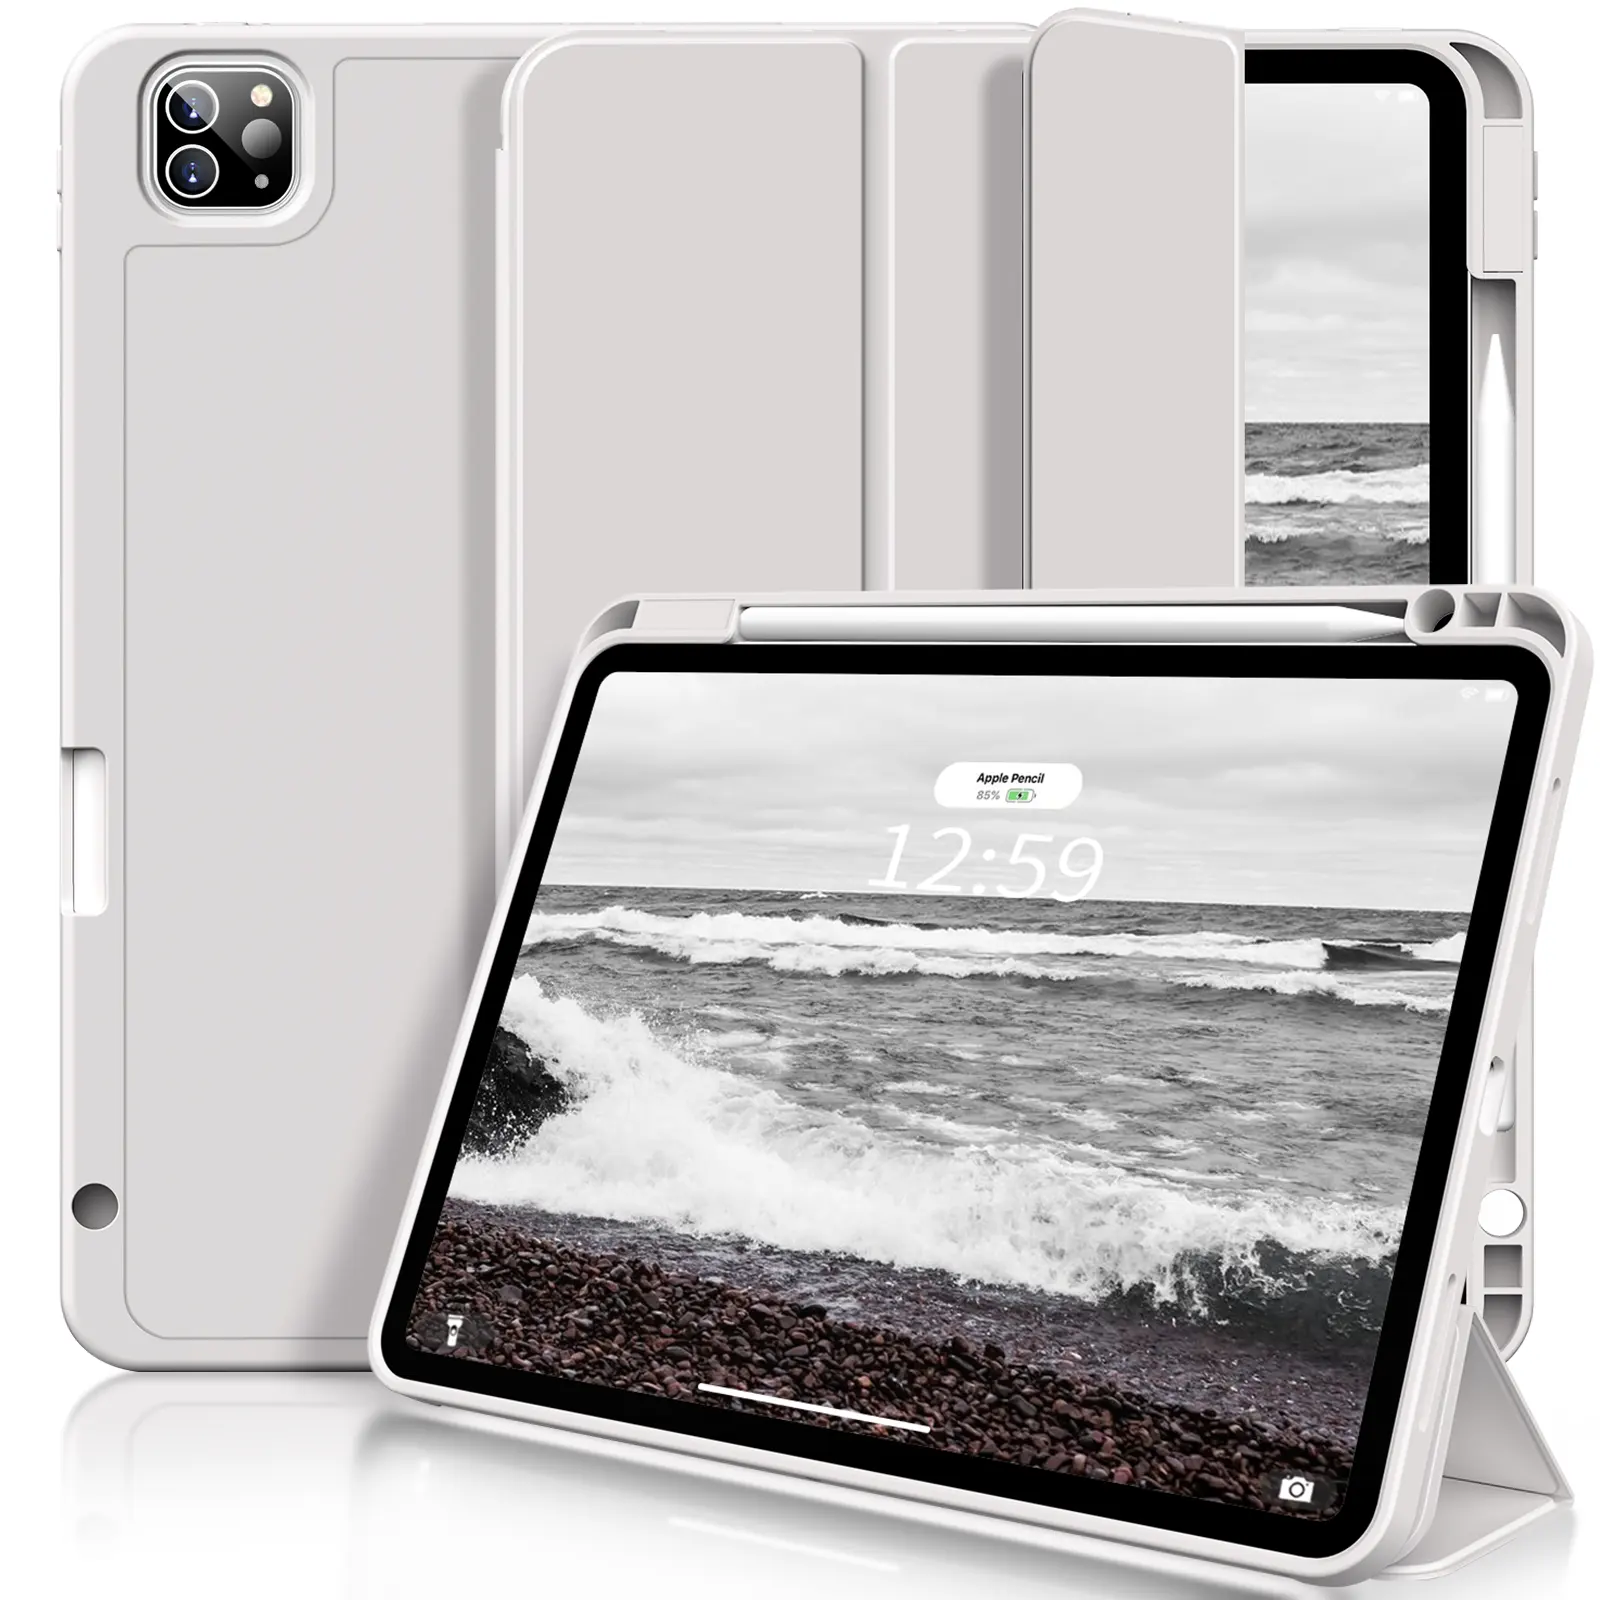 Yeni varış portablity ipad pro234 11 inç için yüksek kalite kapak düz renk tablet kılıfları